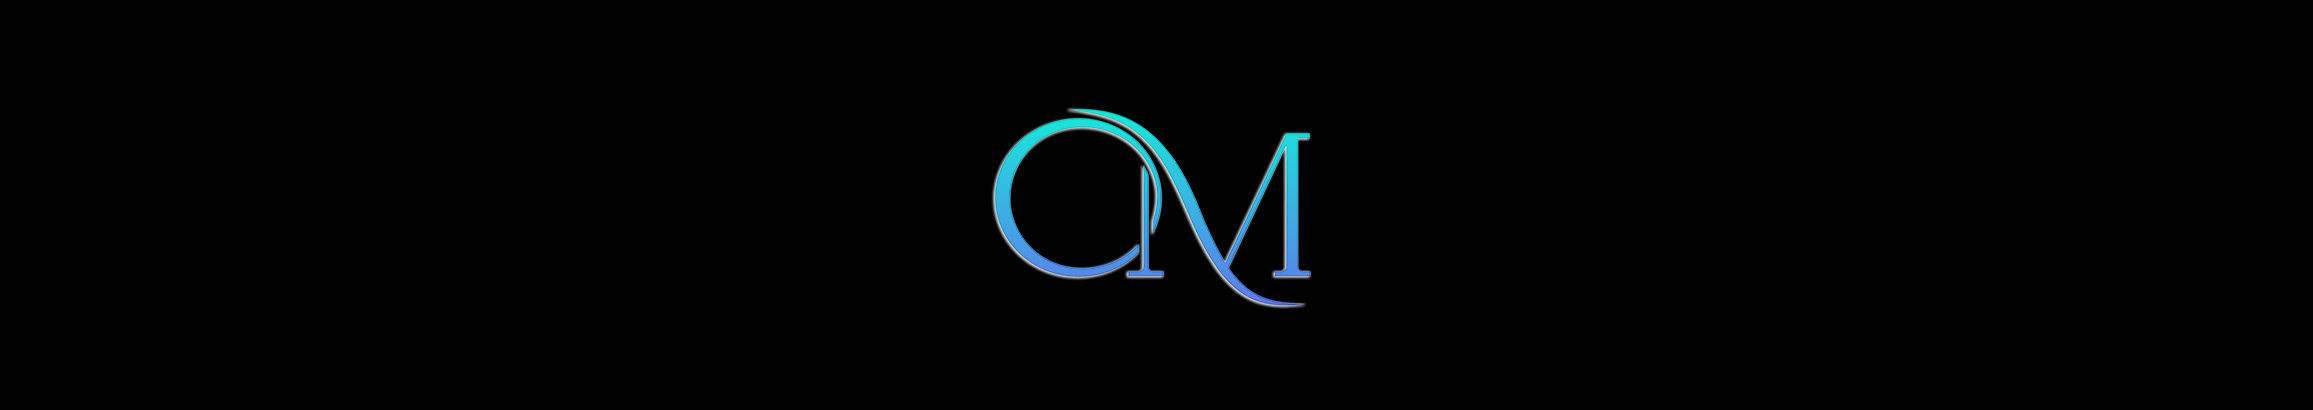 Omar Mohamed's profile banner